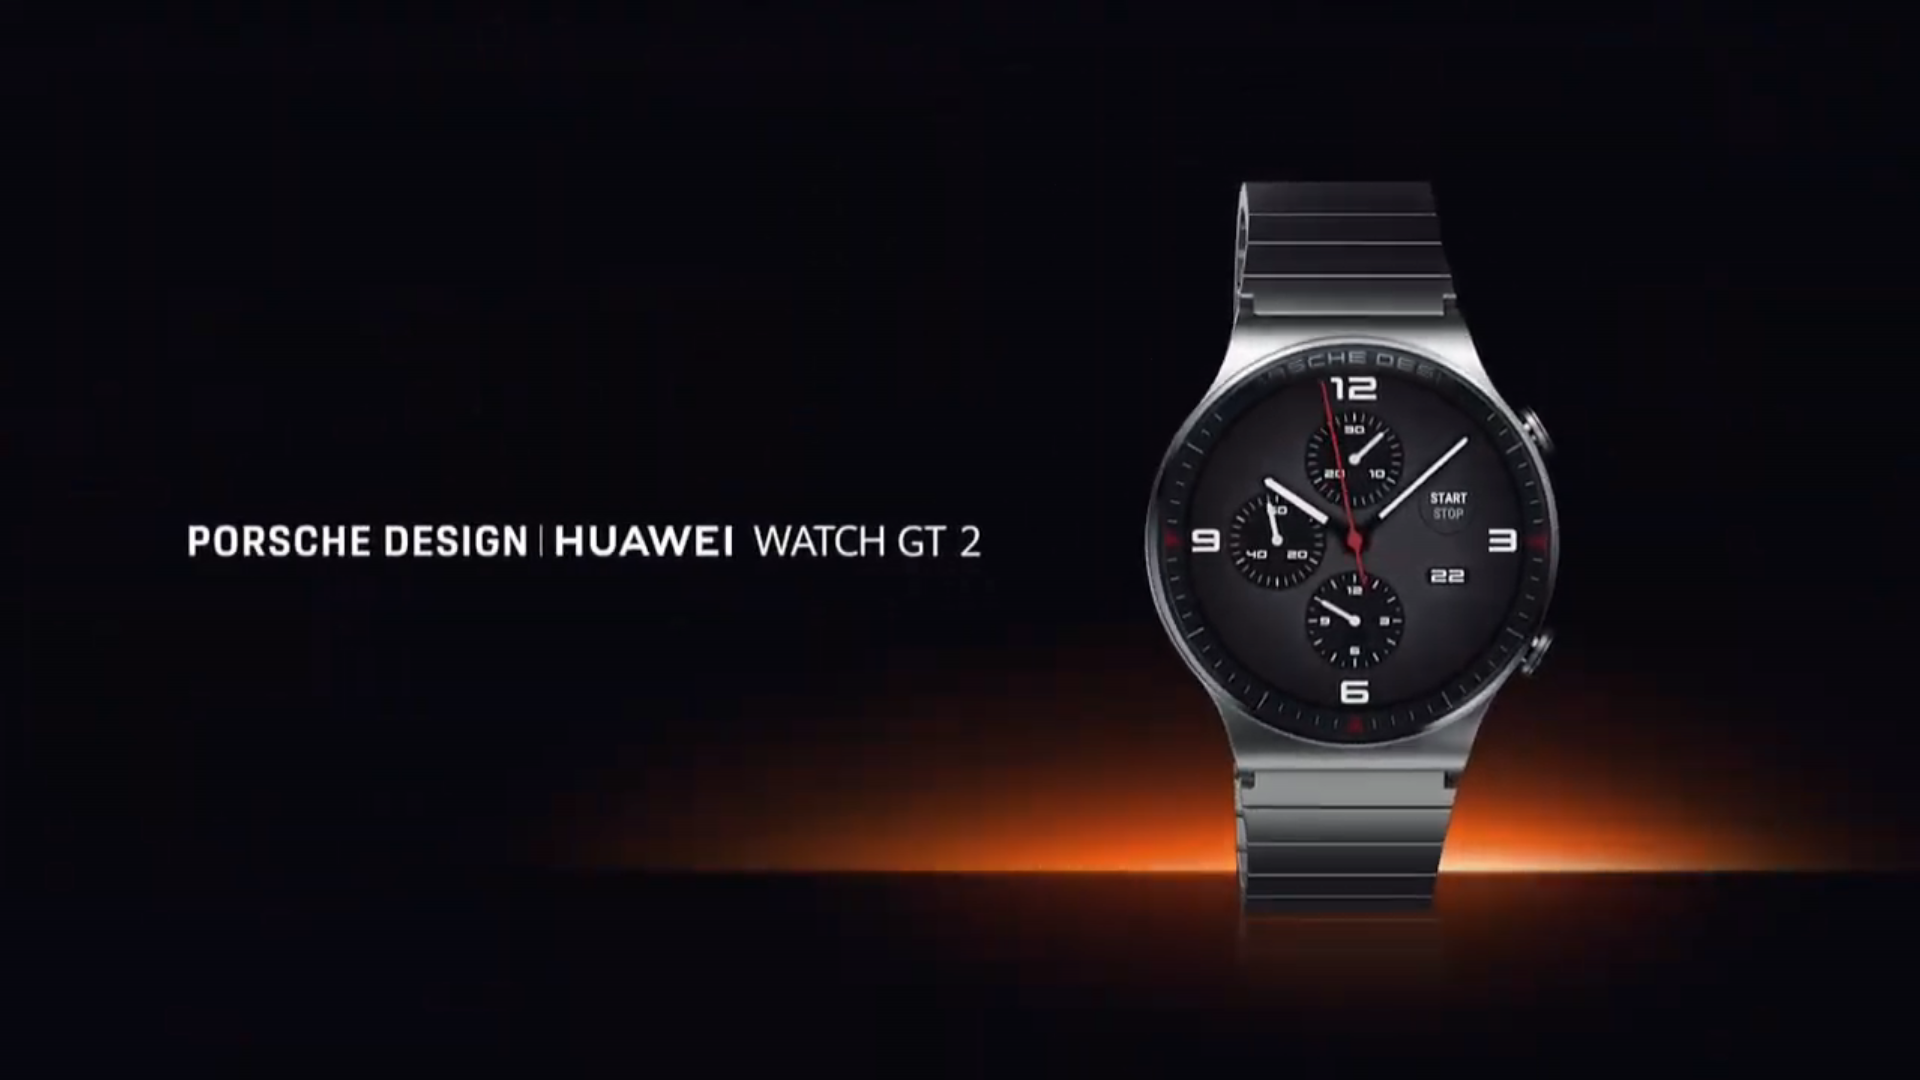 Huawei's include a Watch GT 2 Porsche Design - NotebookCheck.net News